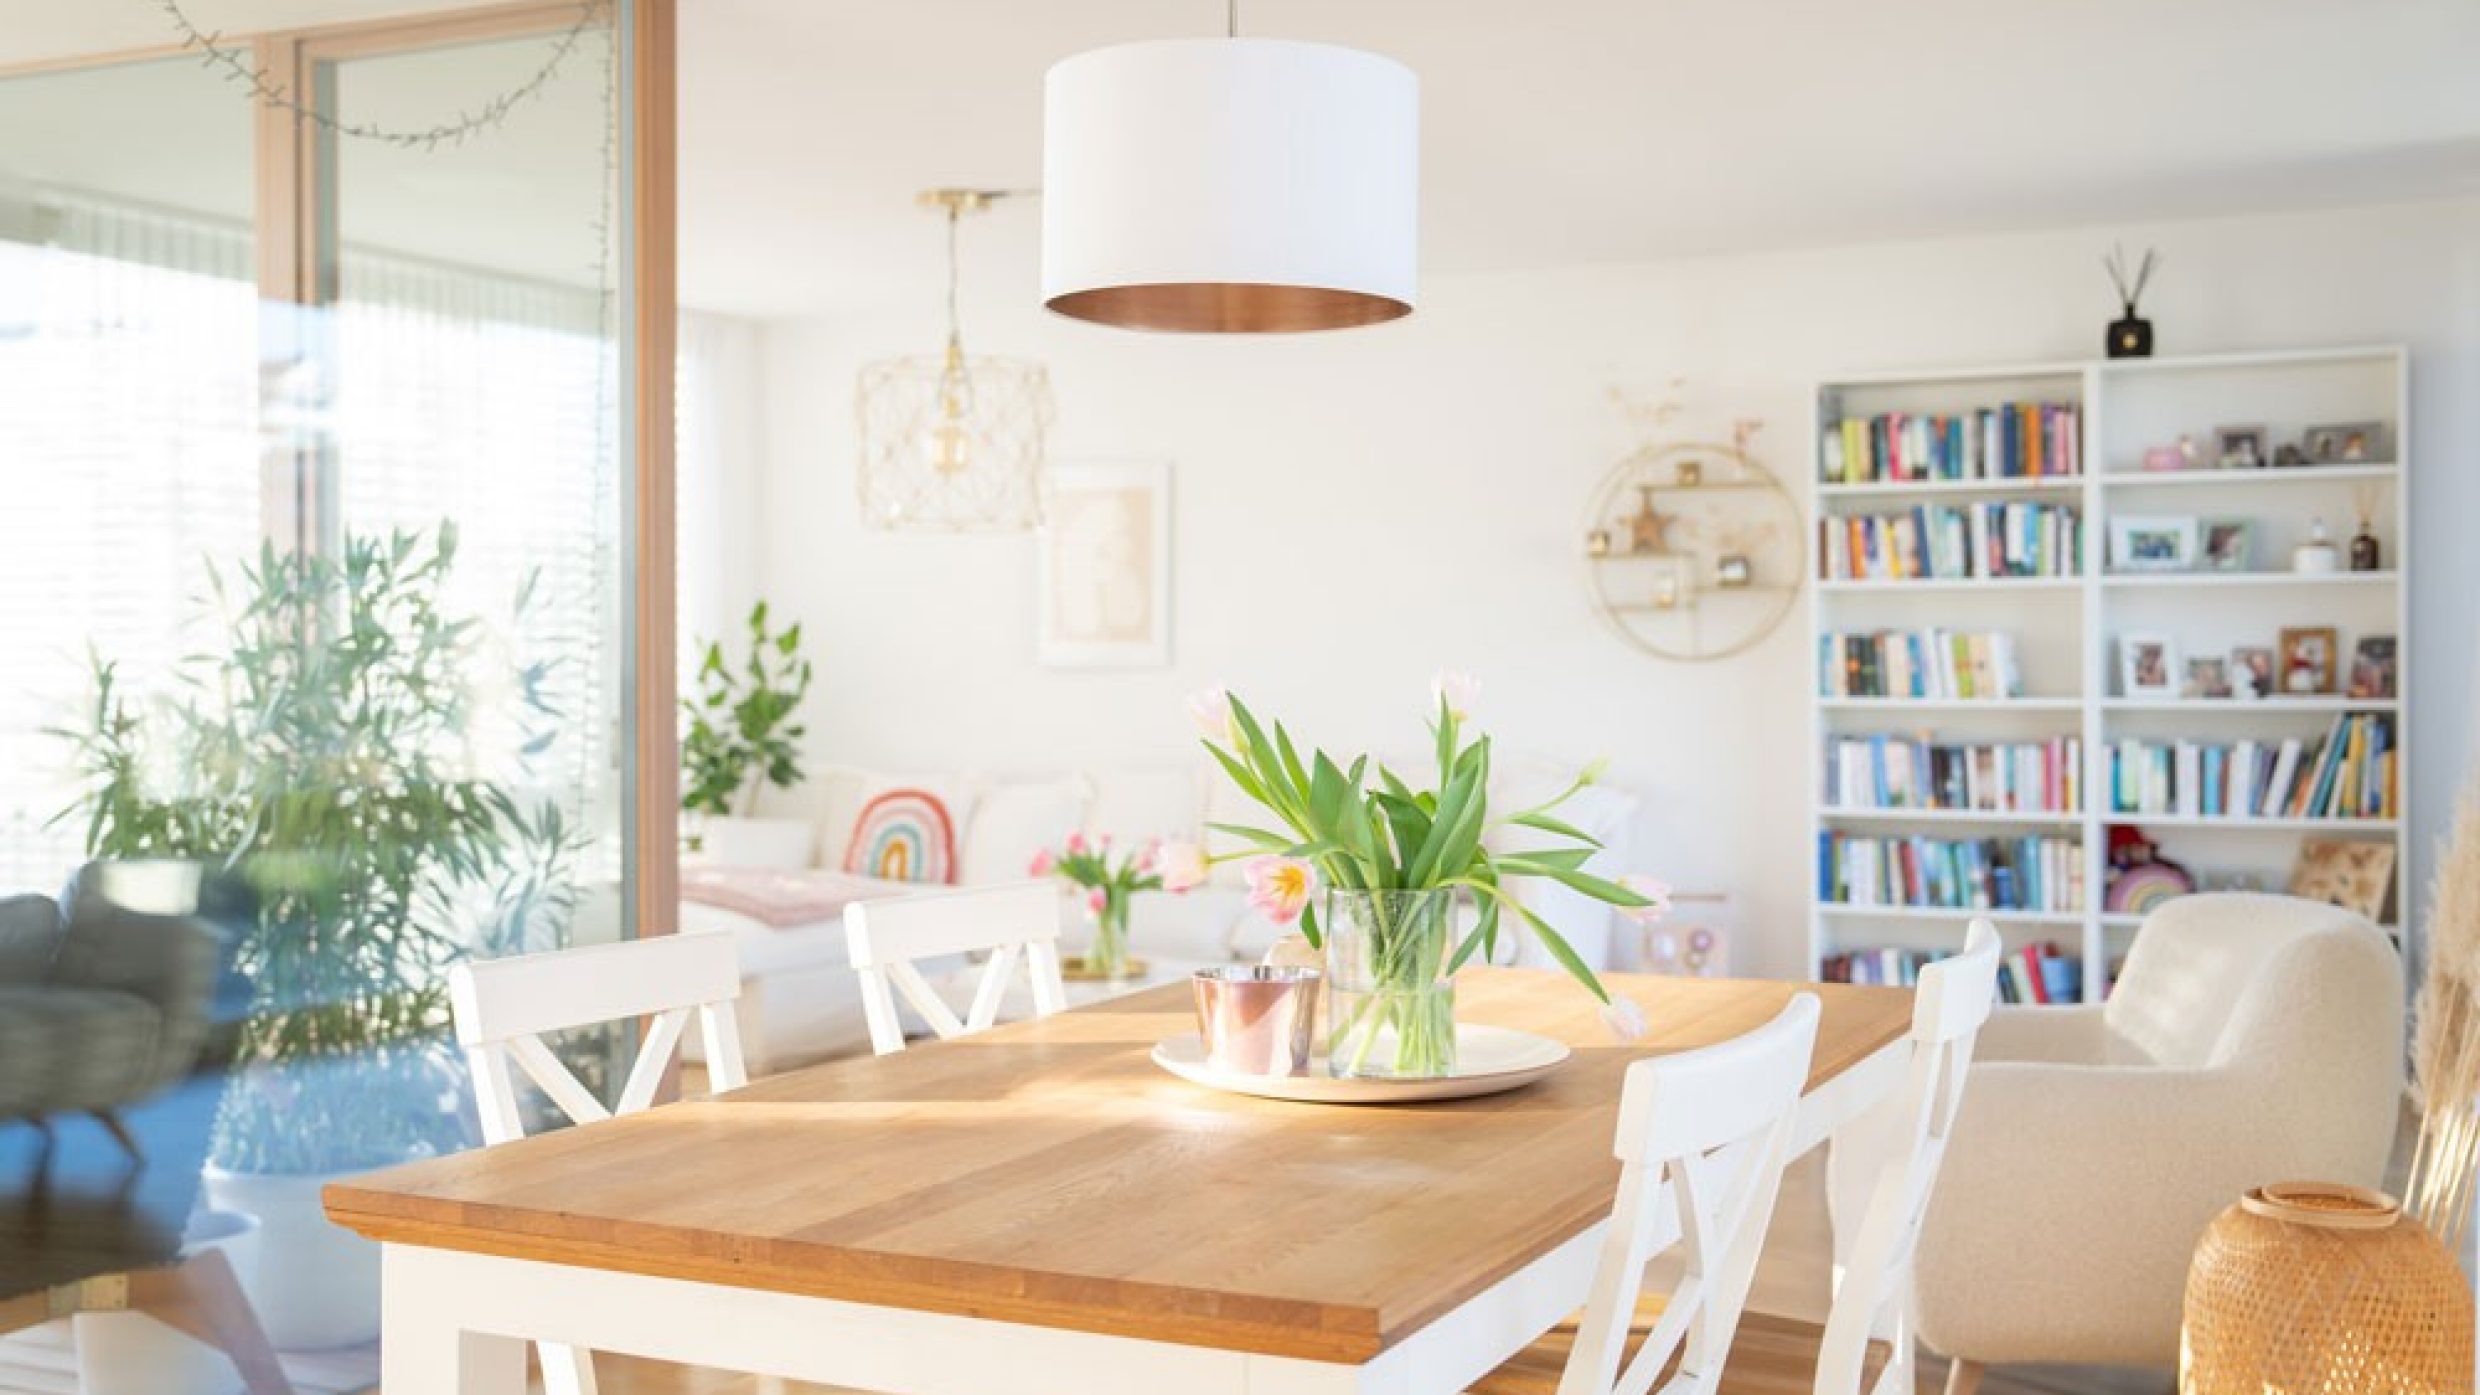 Ein Esstisch mit schönen Tulpen, dahinter sieht man eine Loggia und das Wohnzimmer mit einem Bücherregal.